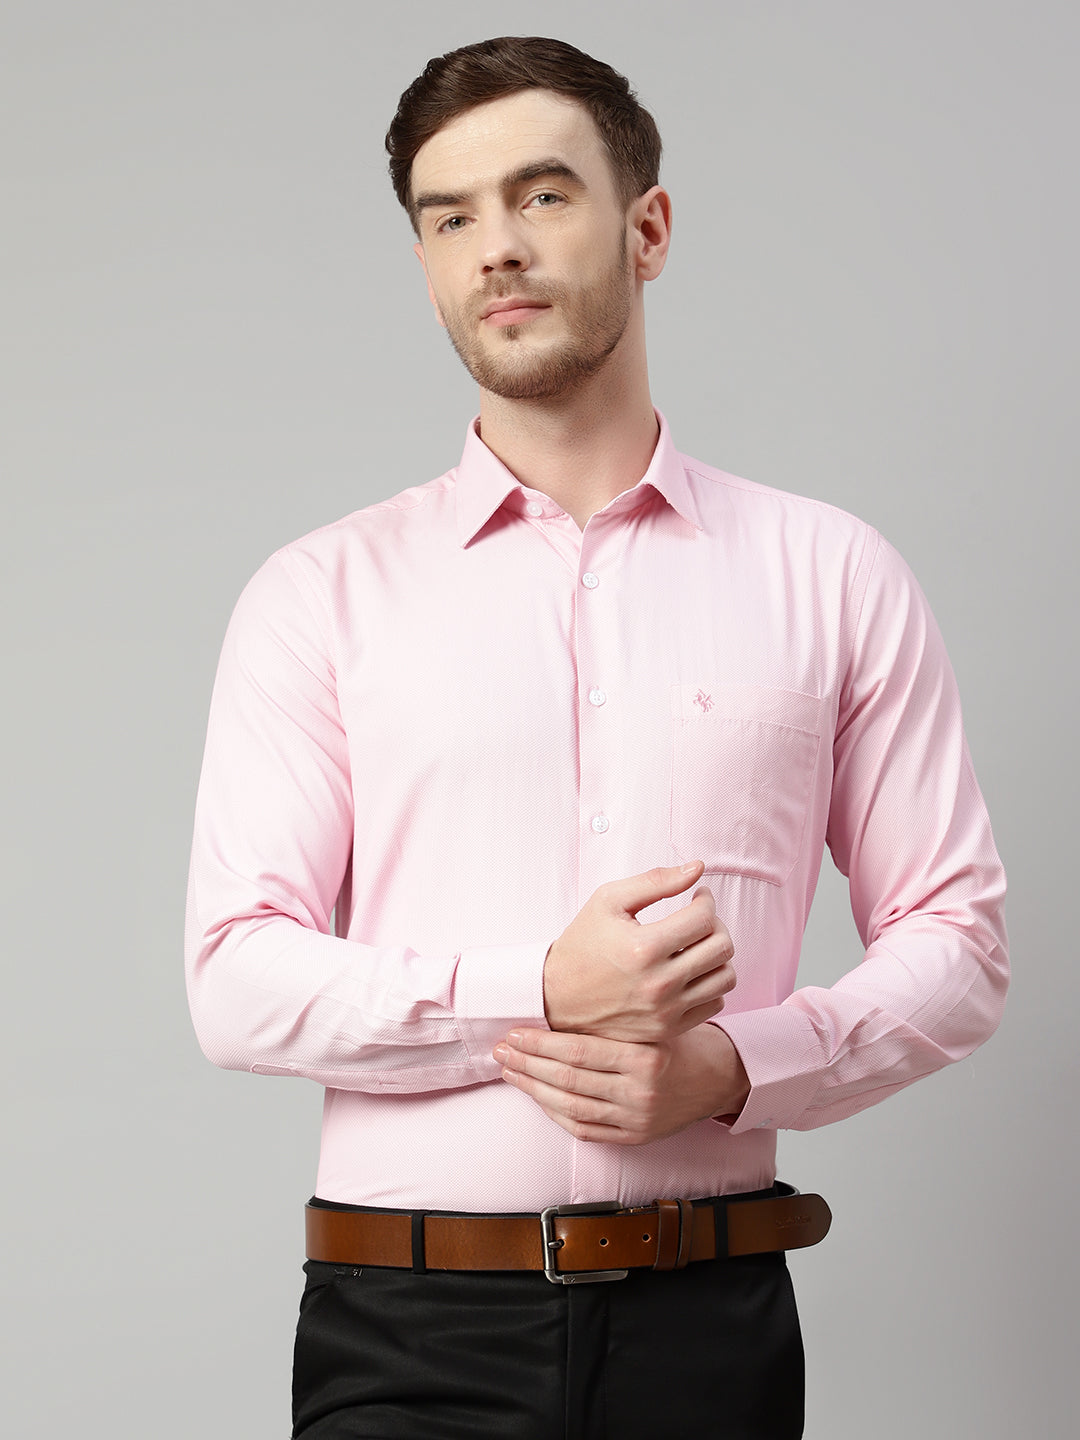 Pink shirt grey pant black belt outfit for men ⋆ Best Fashion Blog For Men  - TheUnstitchd.com